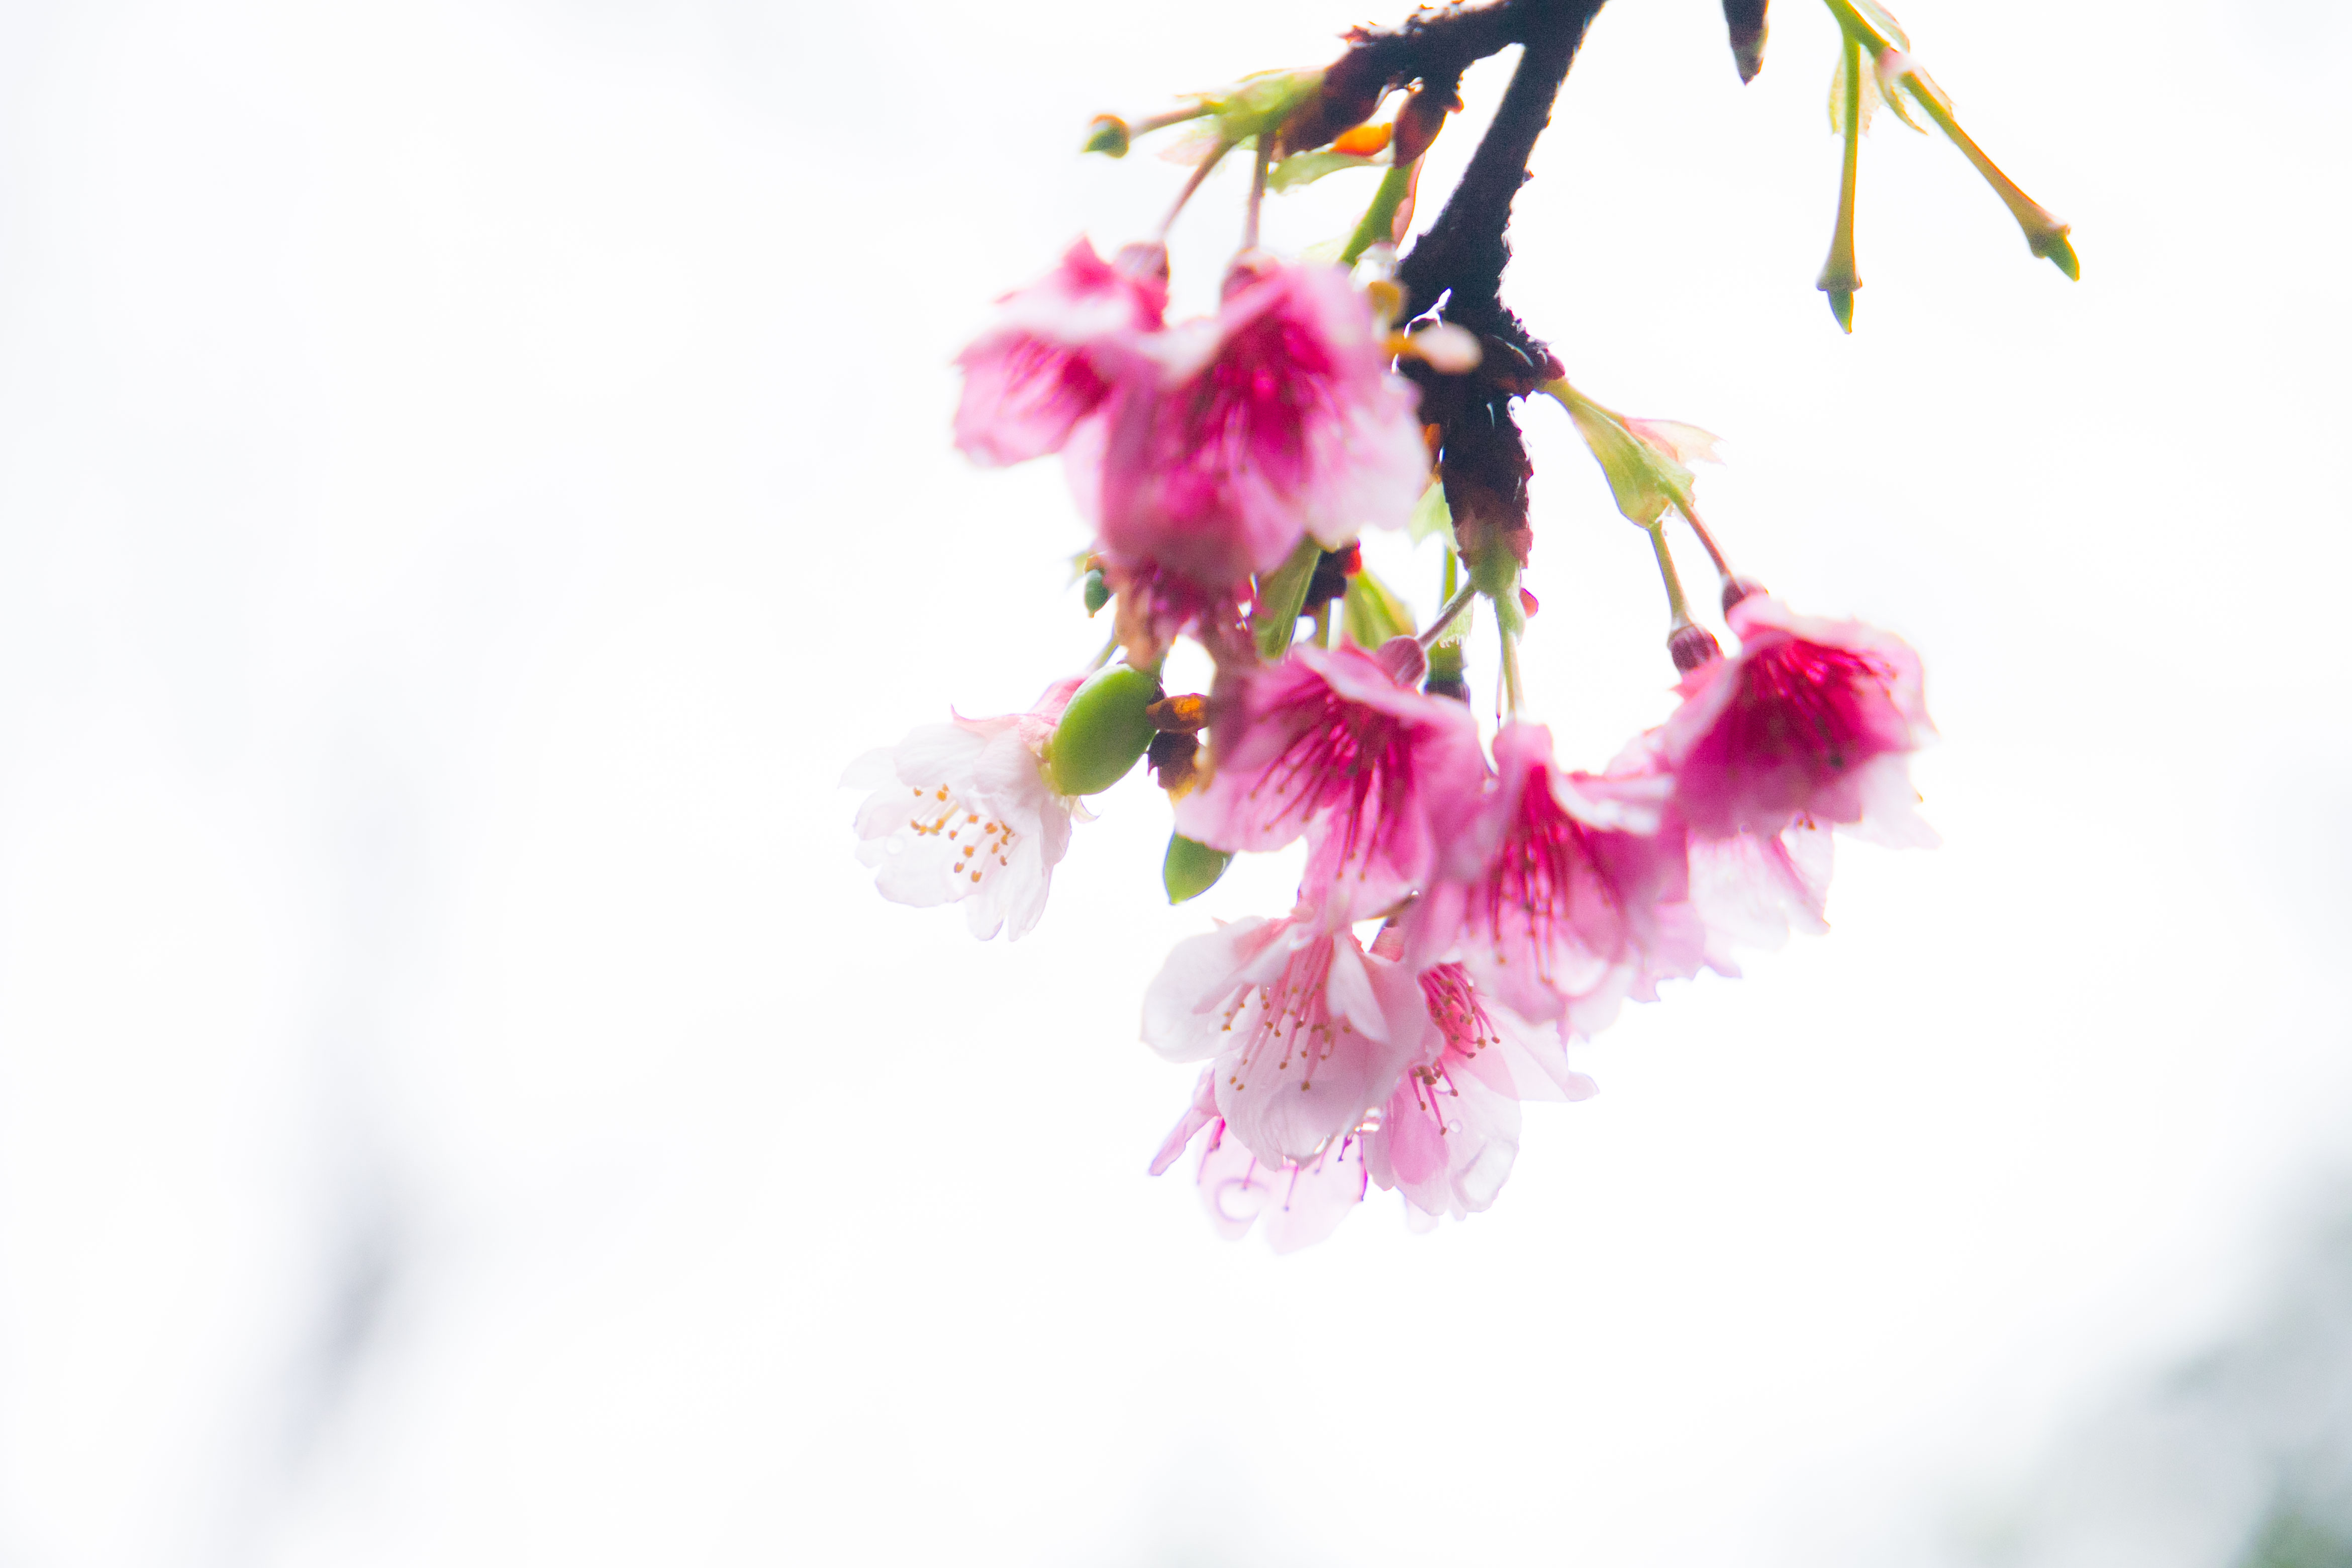 八重山桜